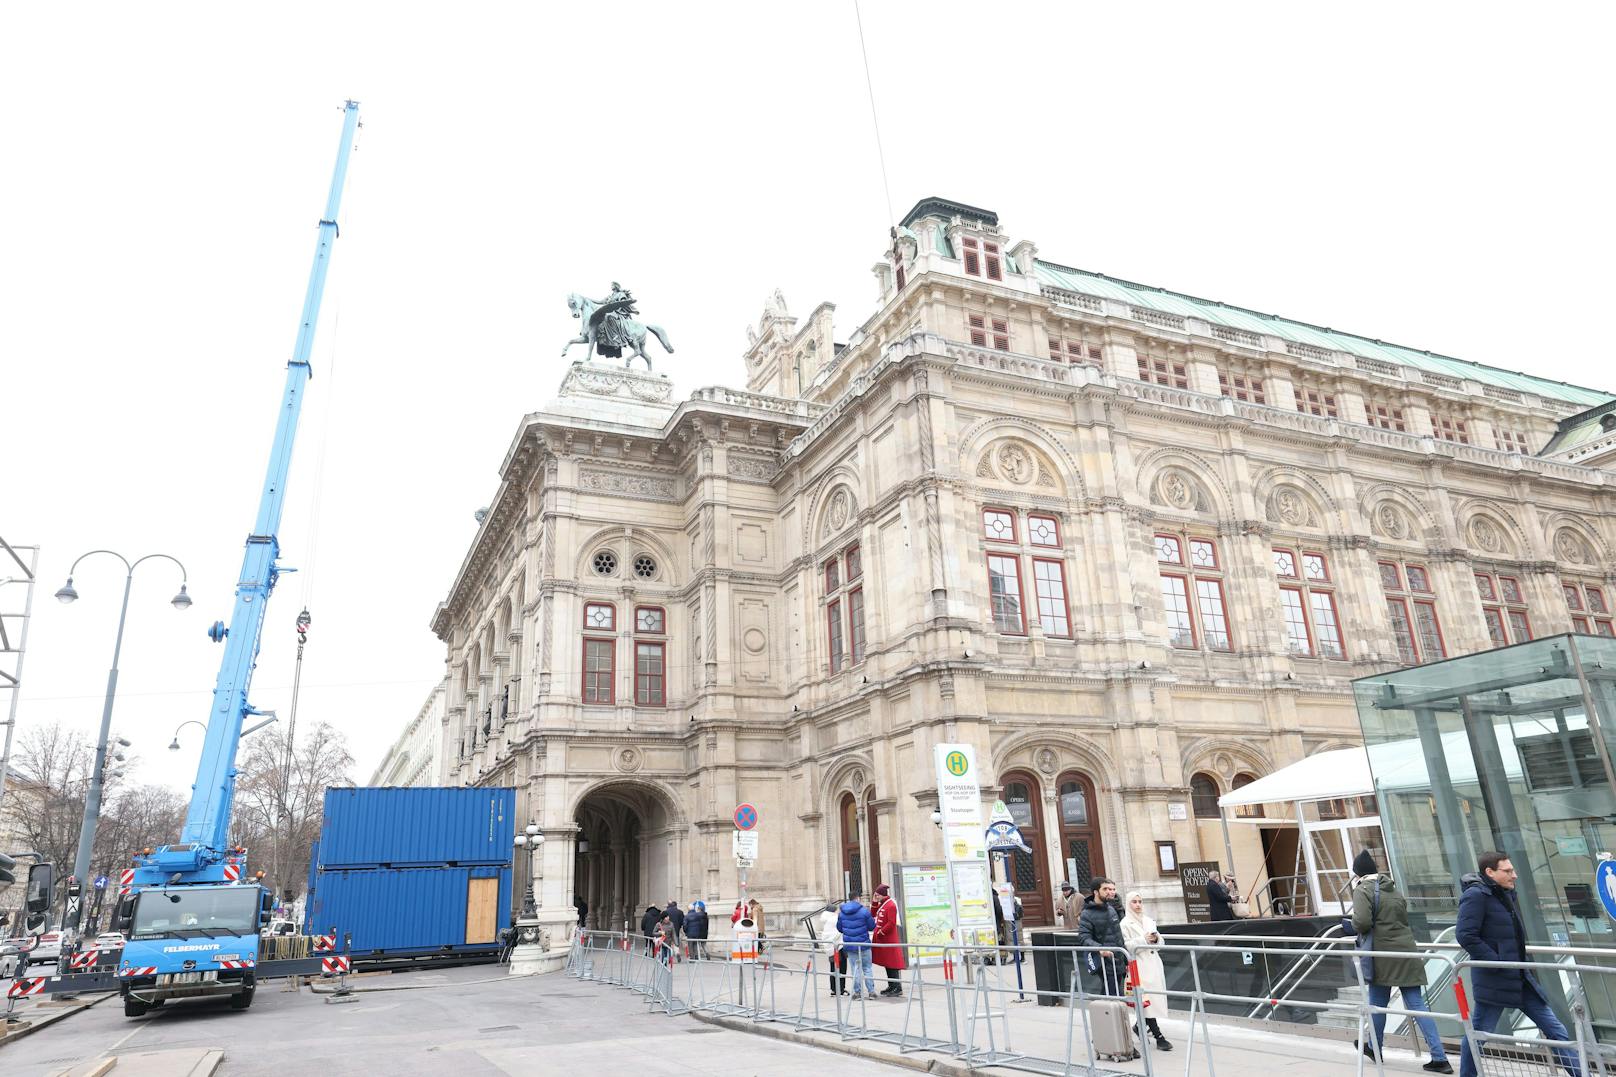 Am 16. Februar geht hier der traditionelle Wiener Opernball über die Bühne – wohl nicht ohne Proteste.